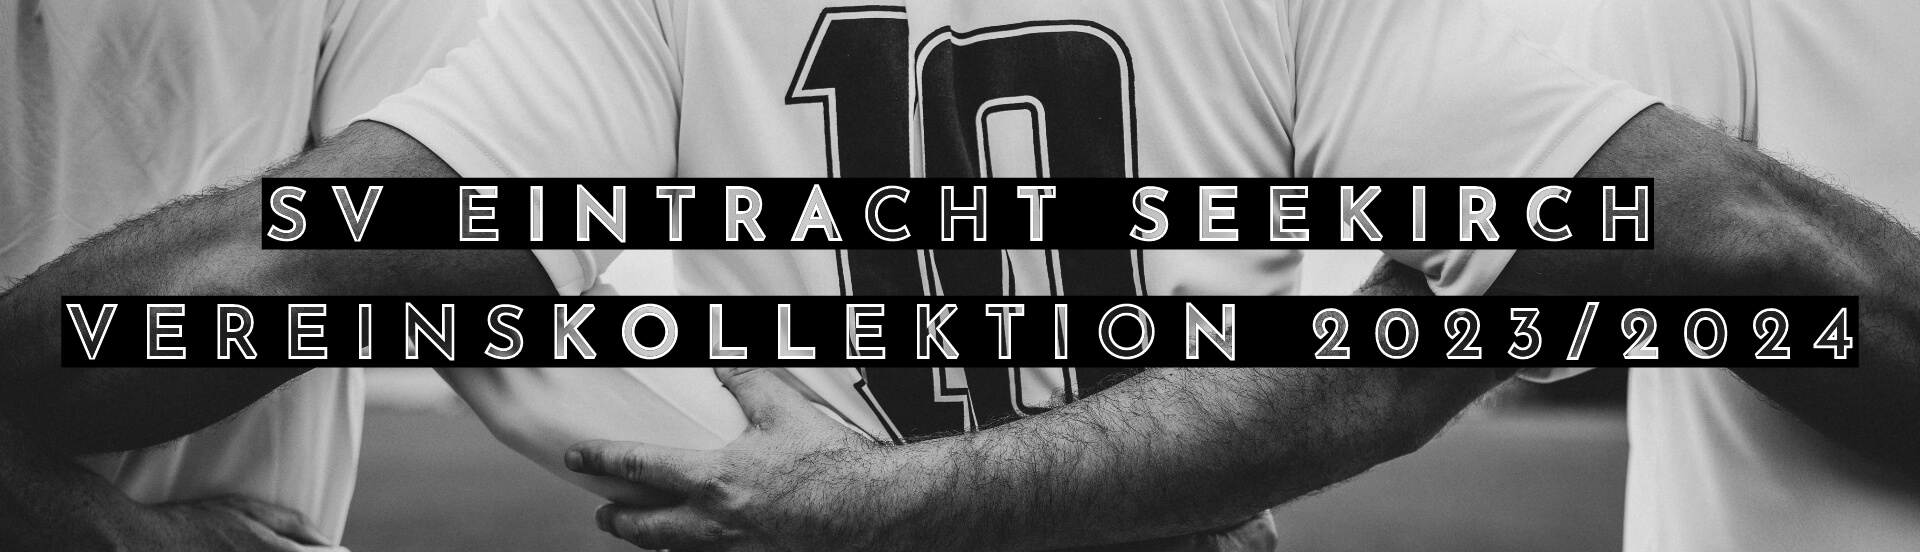 SV Eintracht Seekirch Vereinskollektion 23/24 Jugendfussball